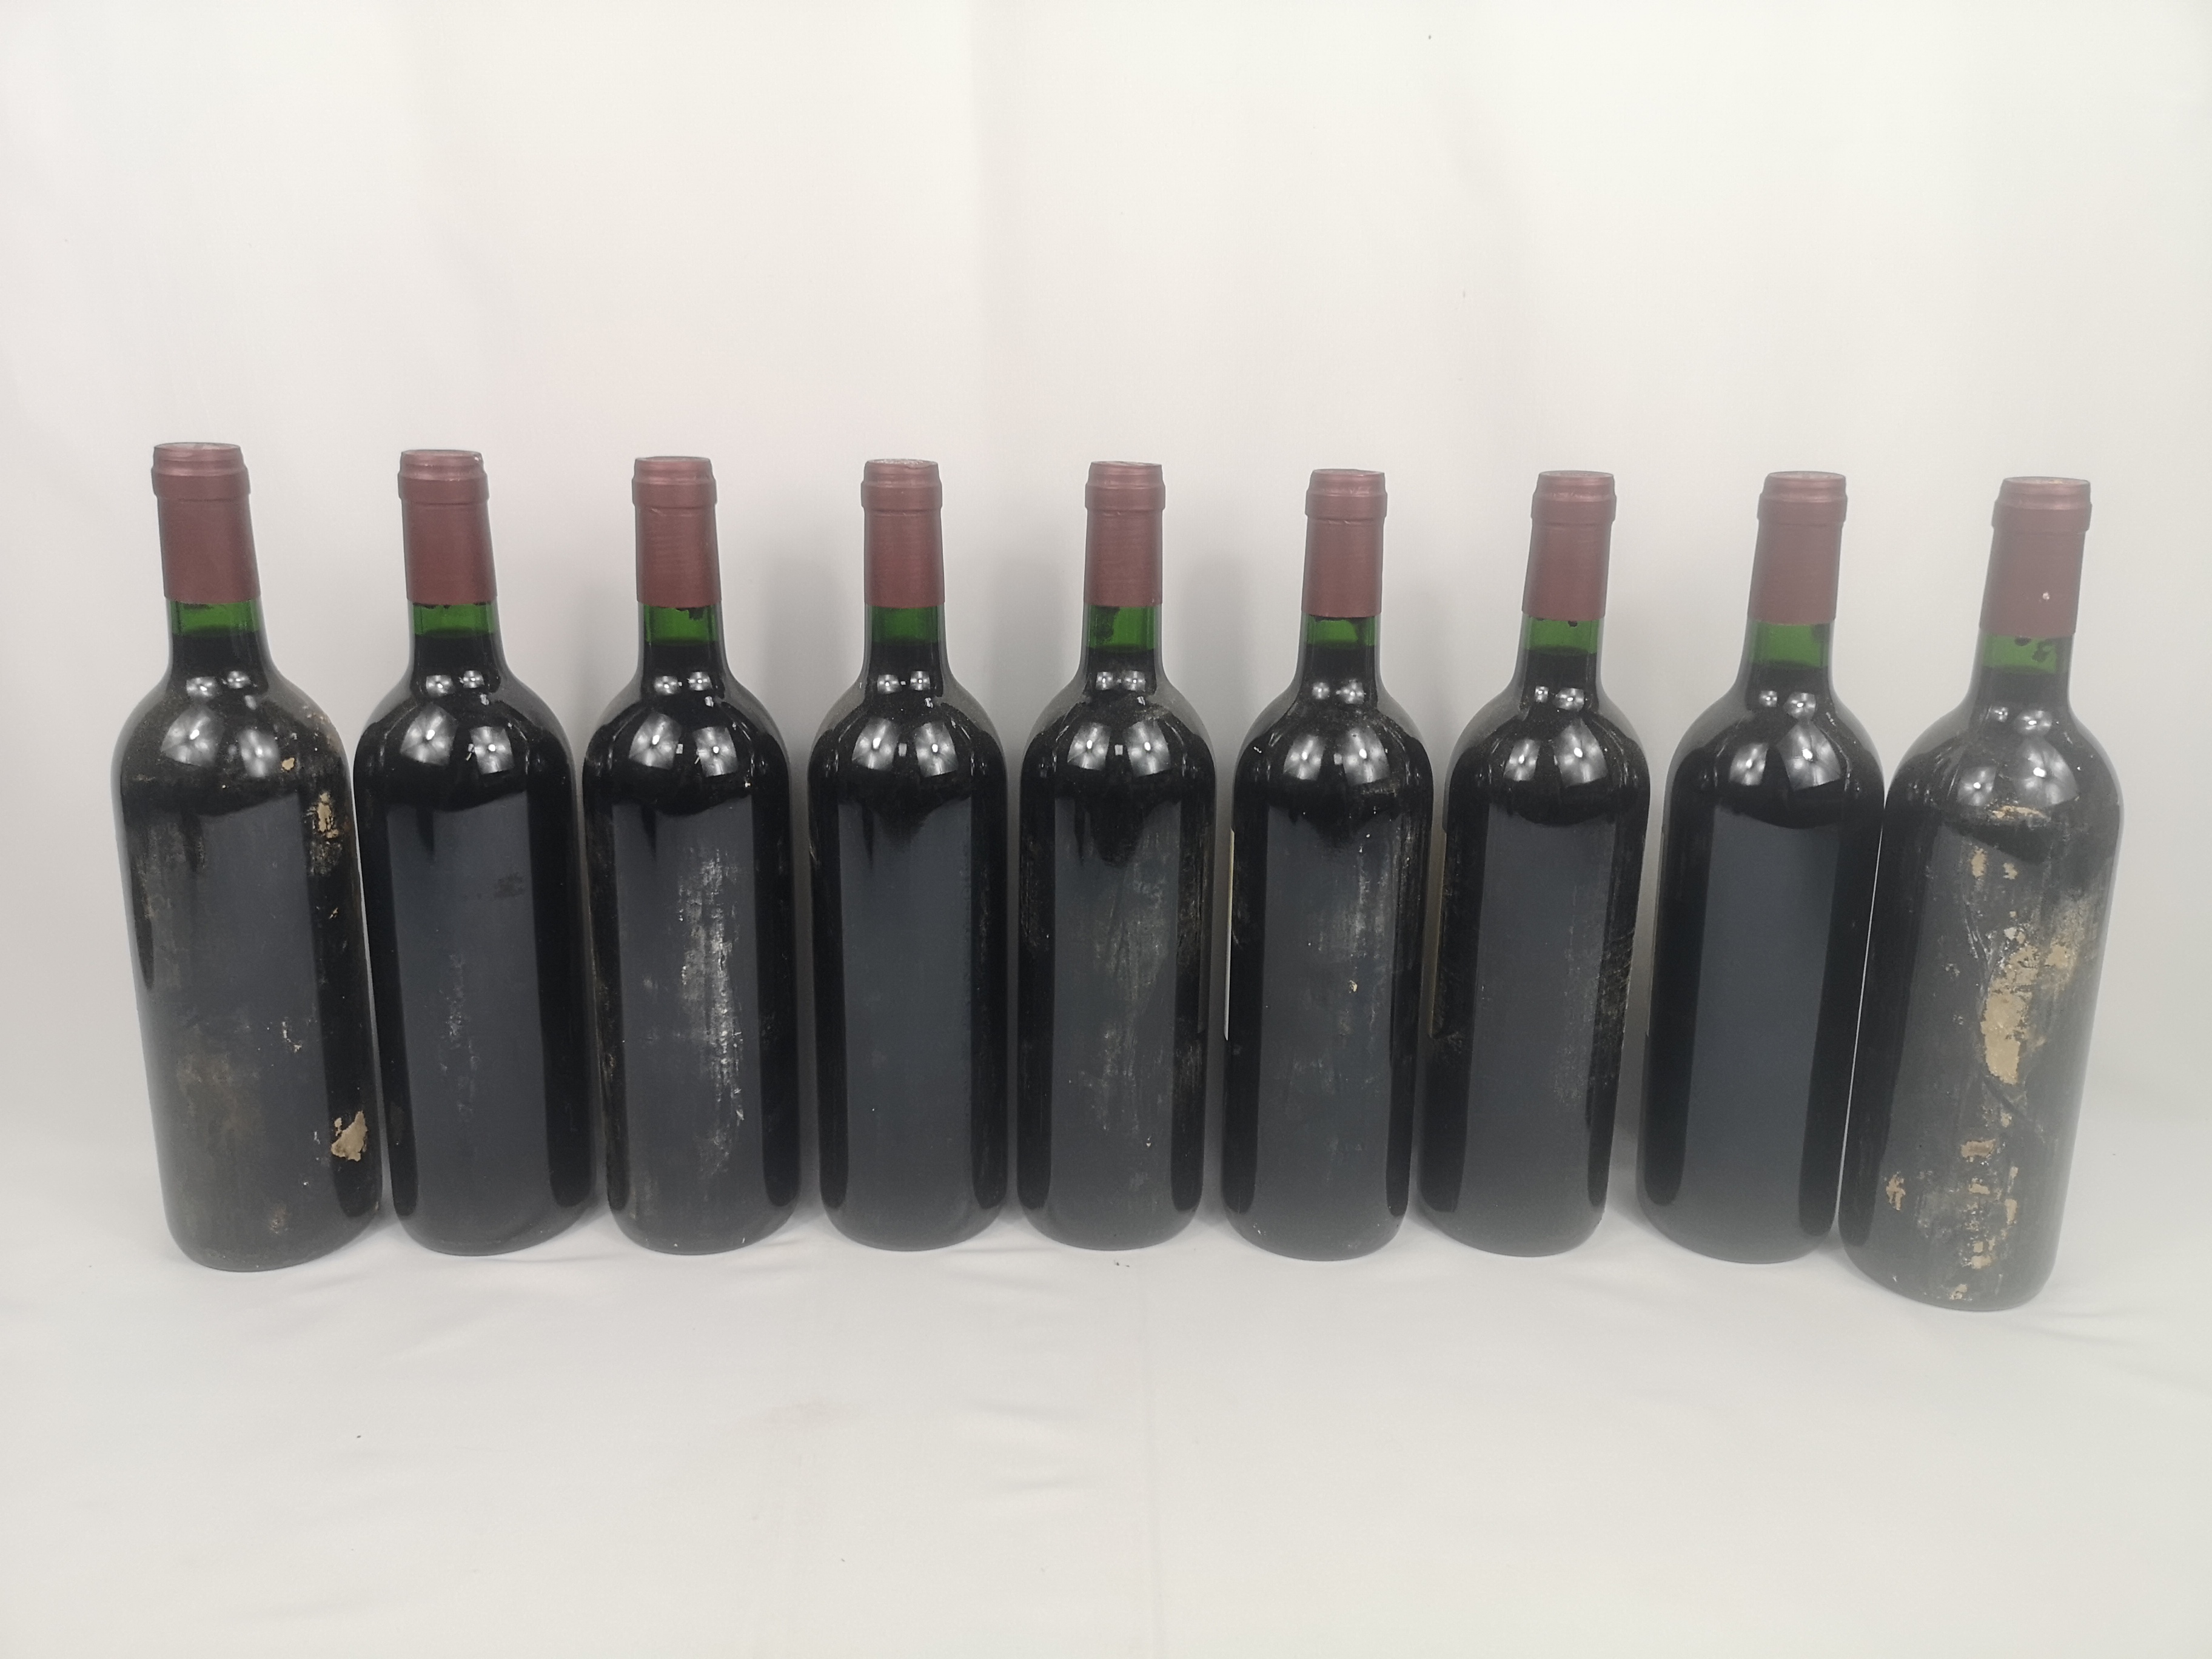 Nine 75cl bottles of Château du Parc Saint-Emilion Grand Cru 2000. - Image 5 of 5